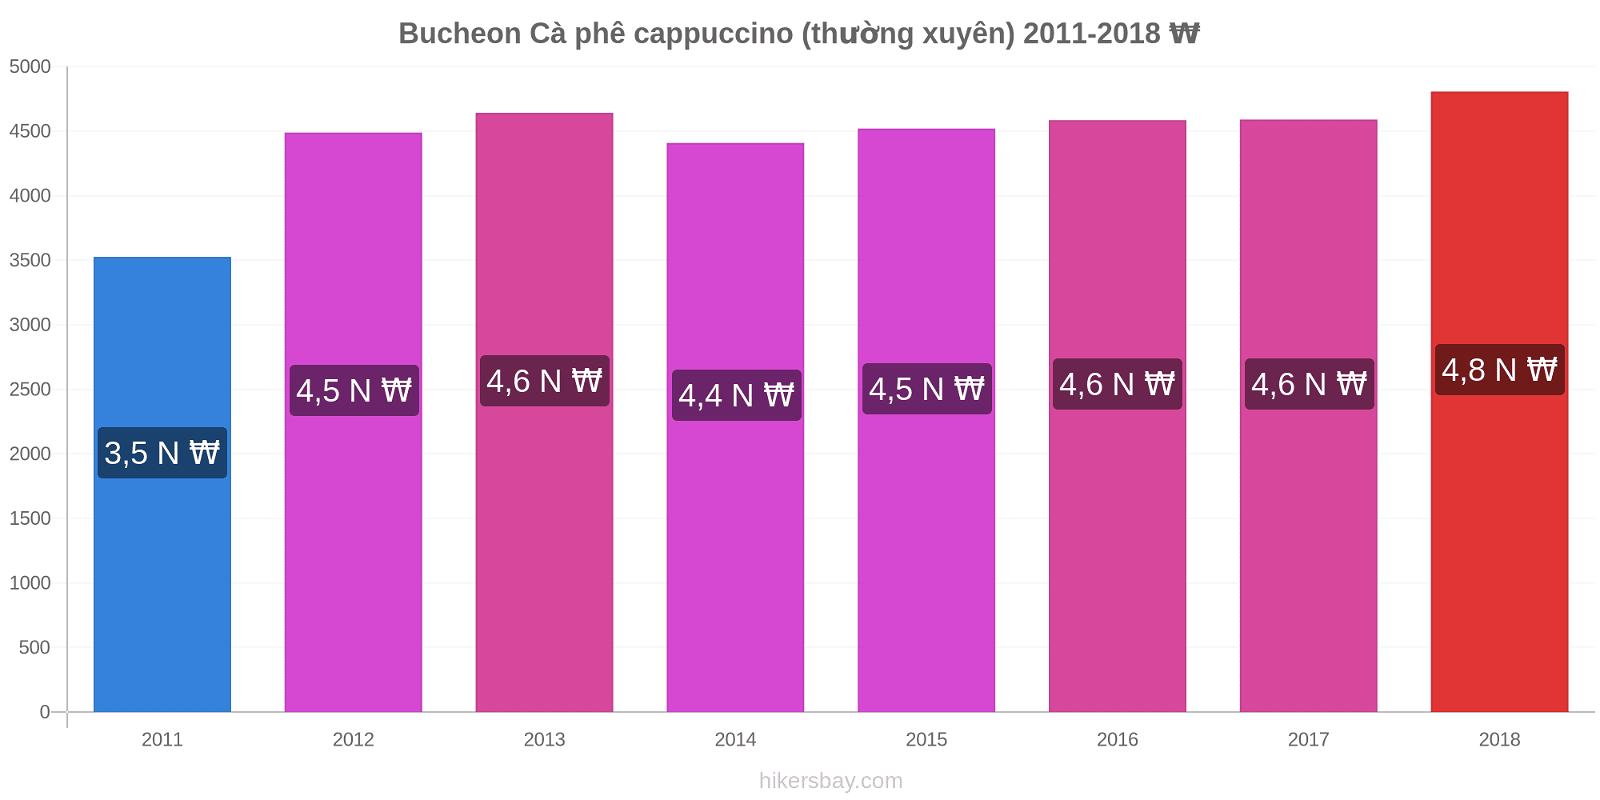 Bucheon thay đổi giá Cà phê cappuccino (thường xuyên) hikersbay.com